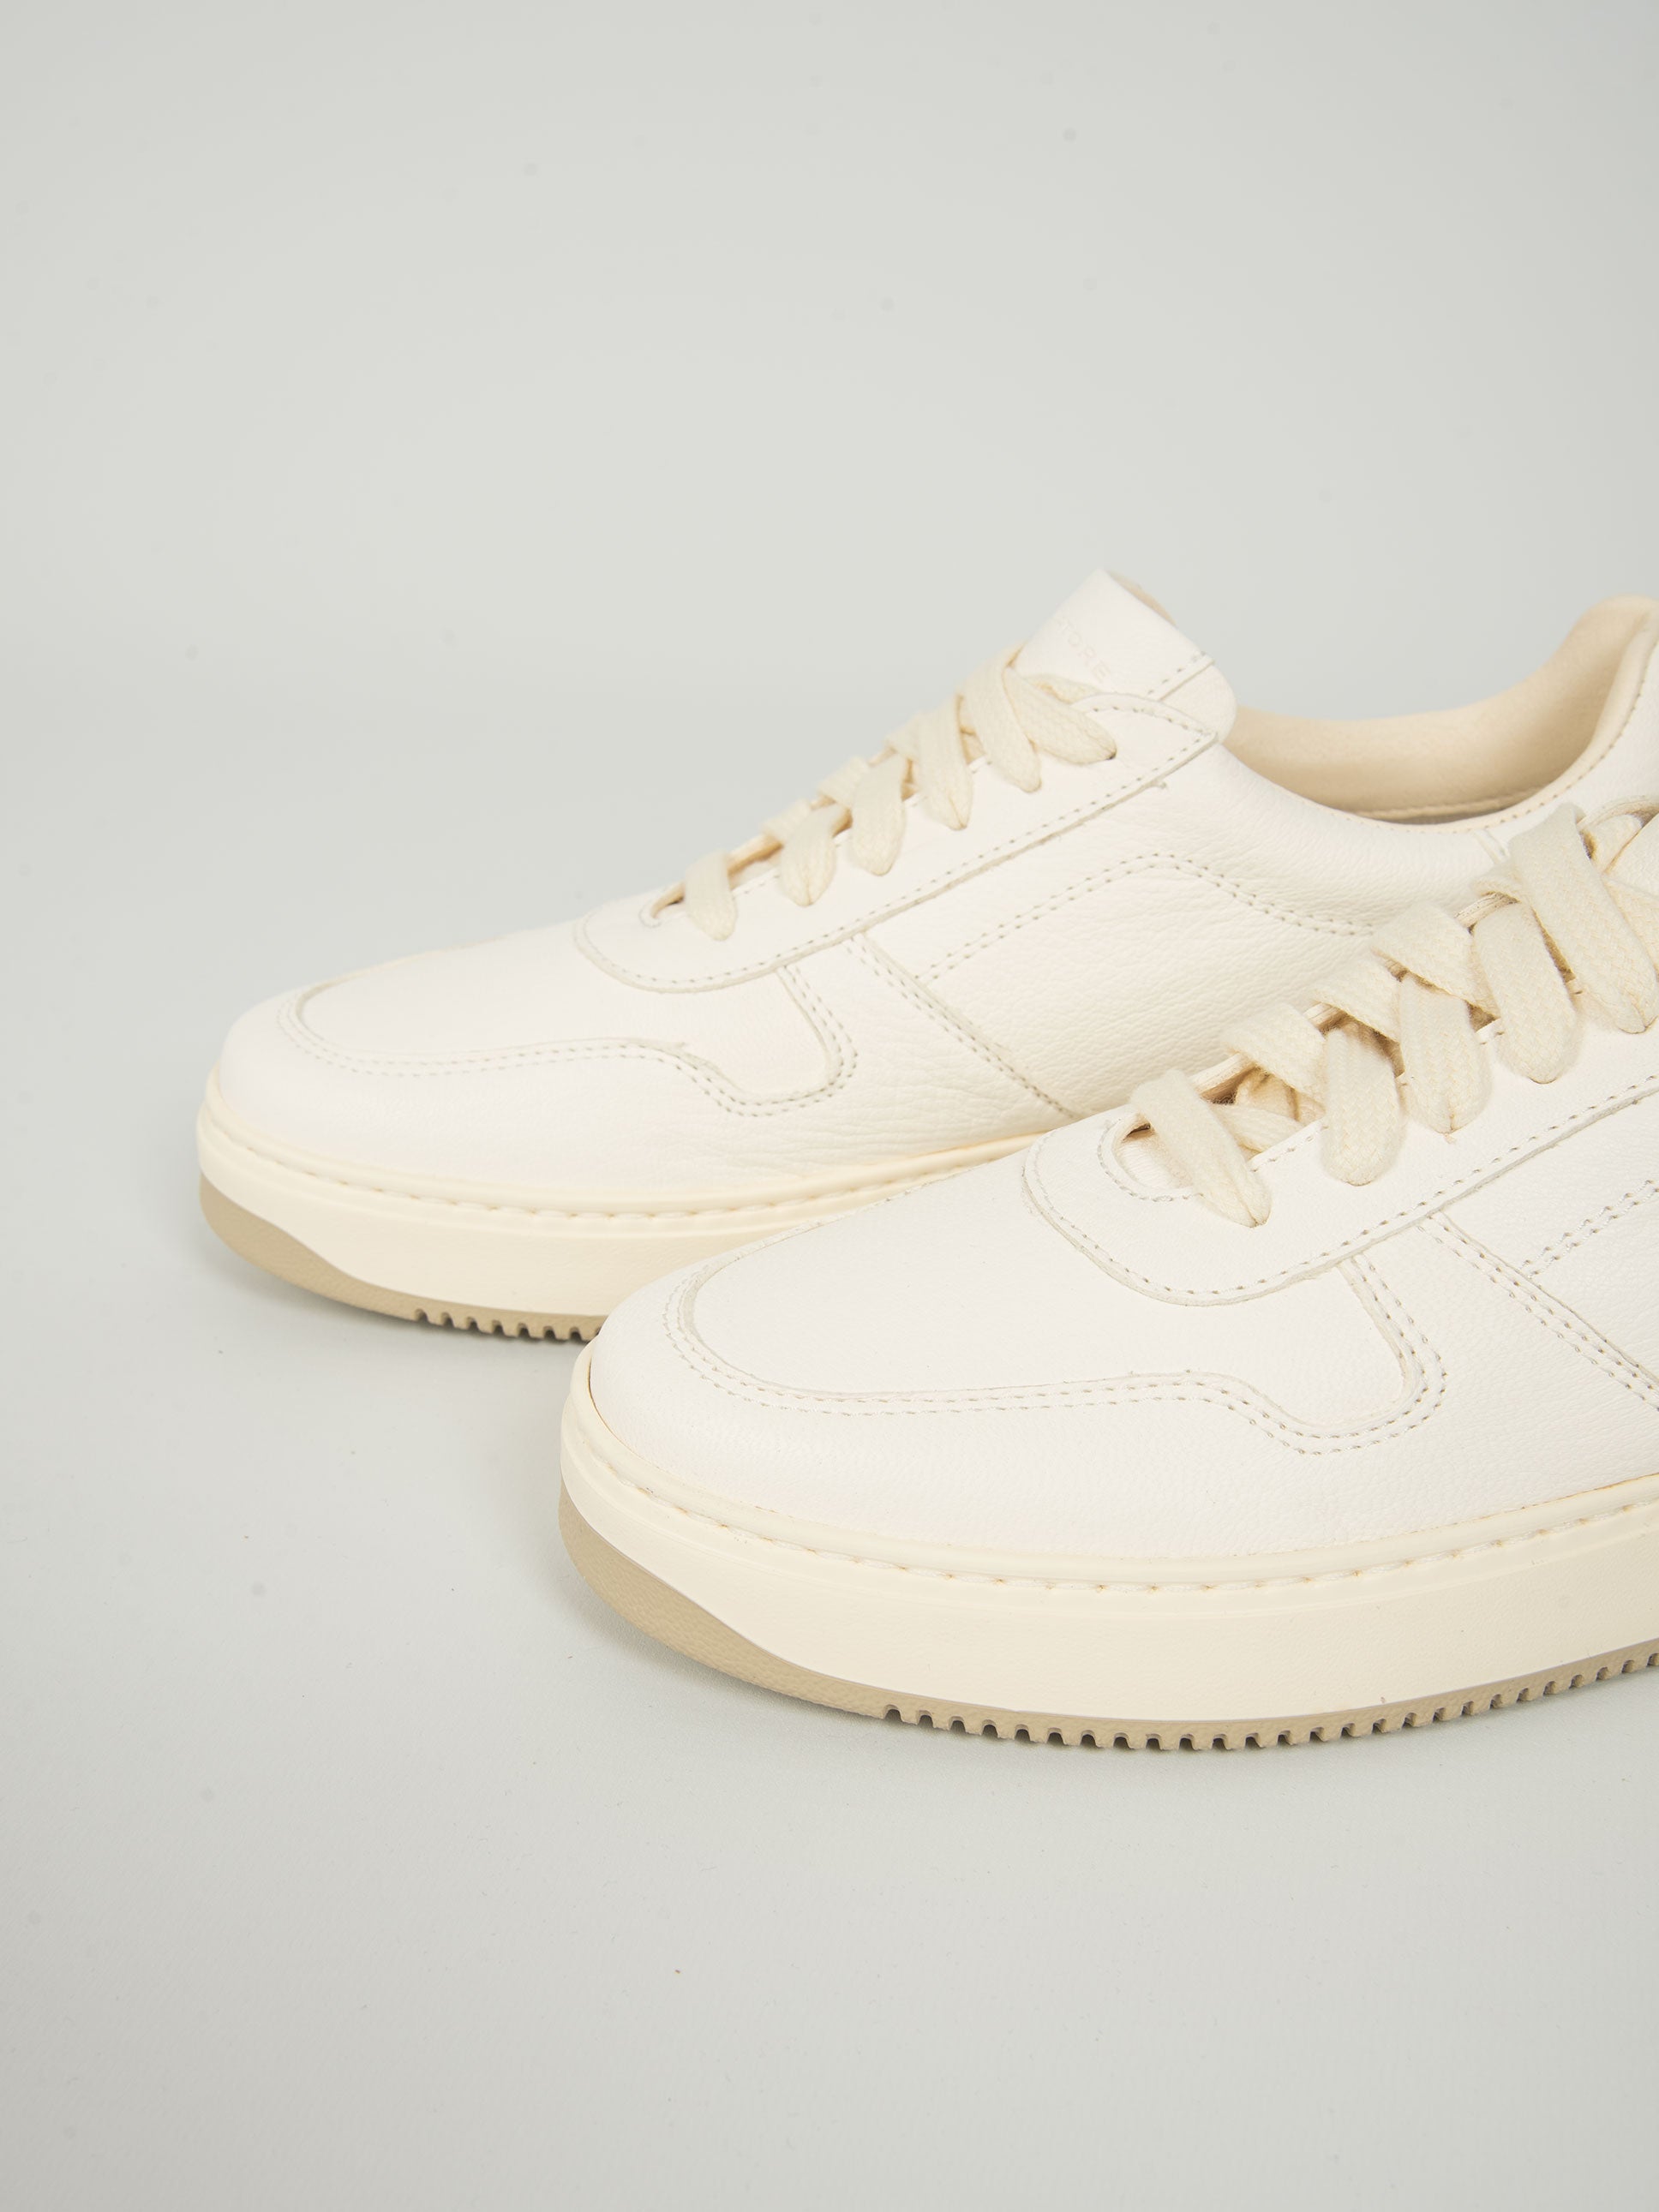 Pastello bianco per calzature anni '40 – NONèdabuttare